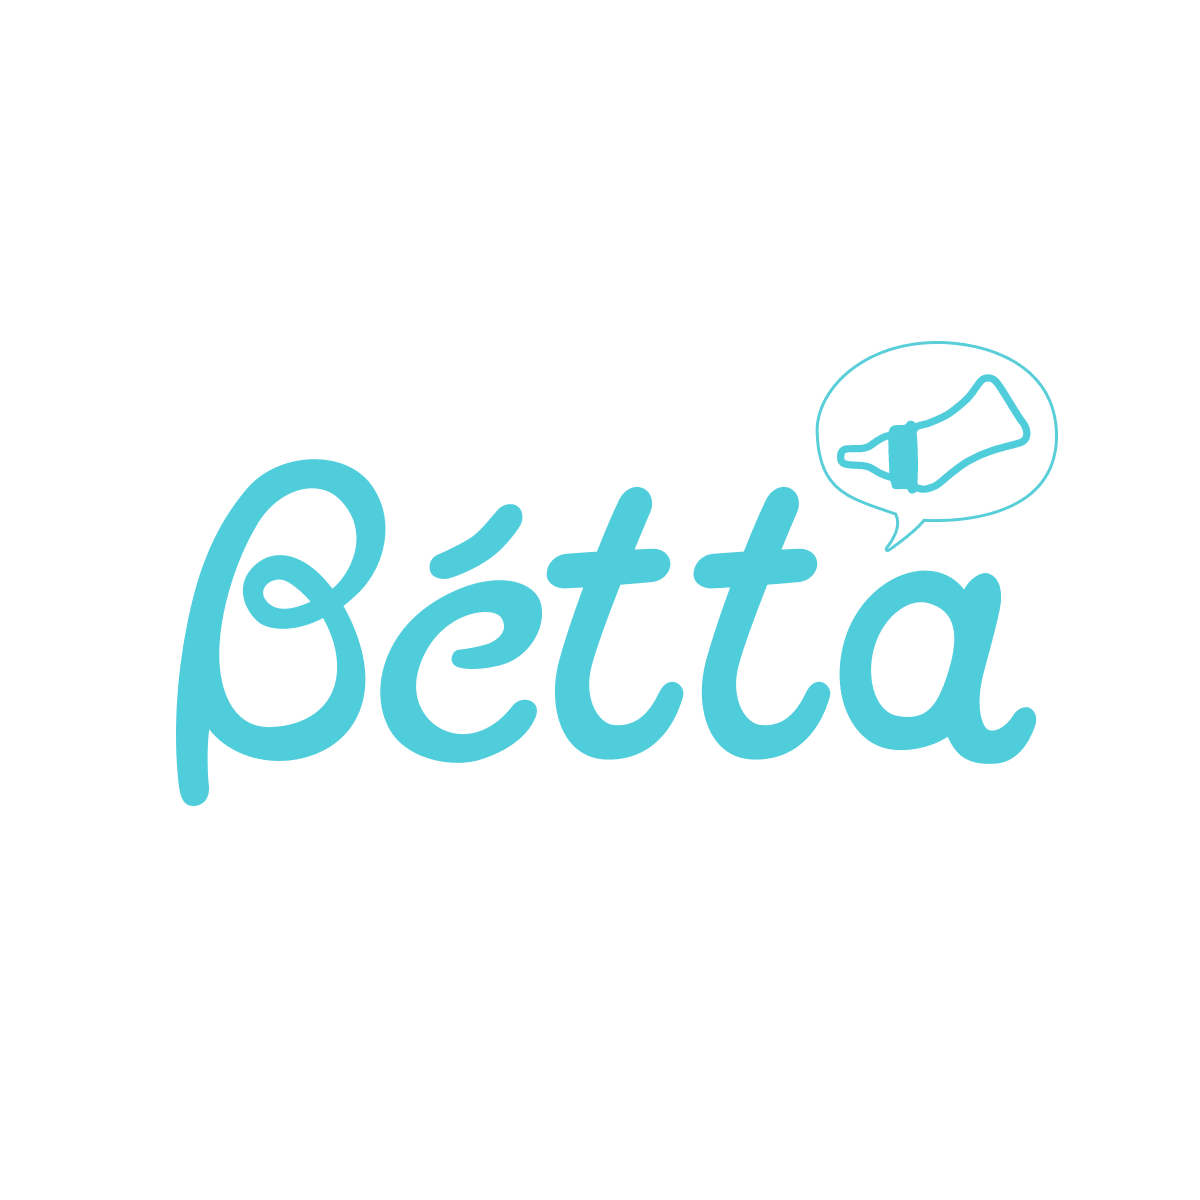 Dr. Betta